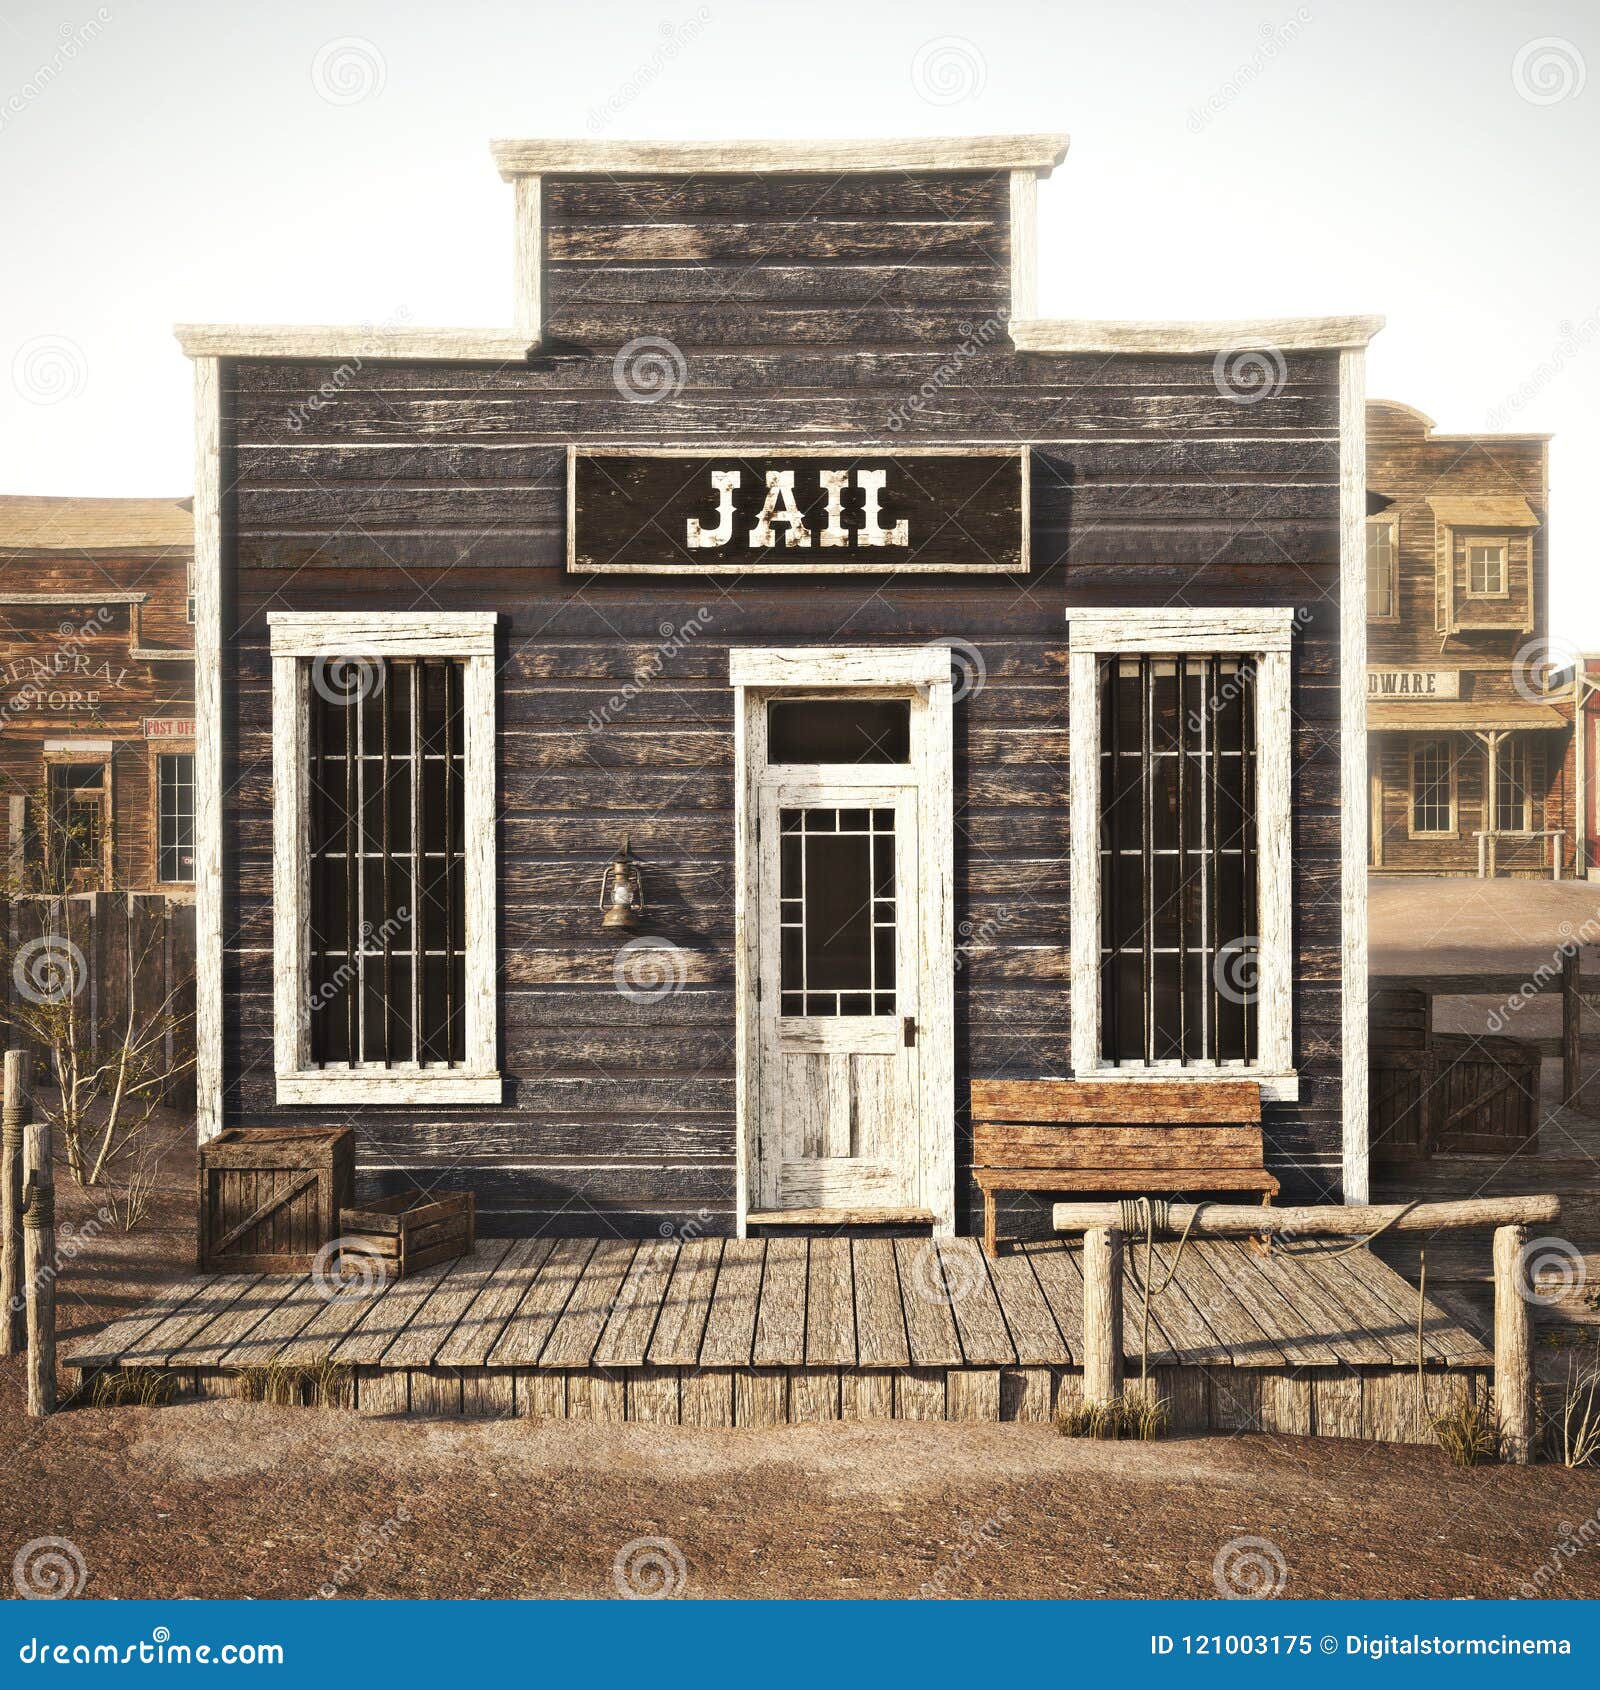 rustic western town jail.